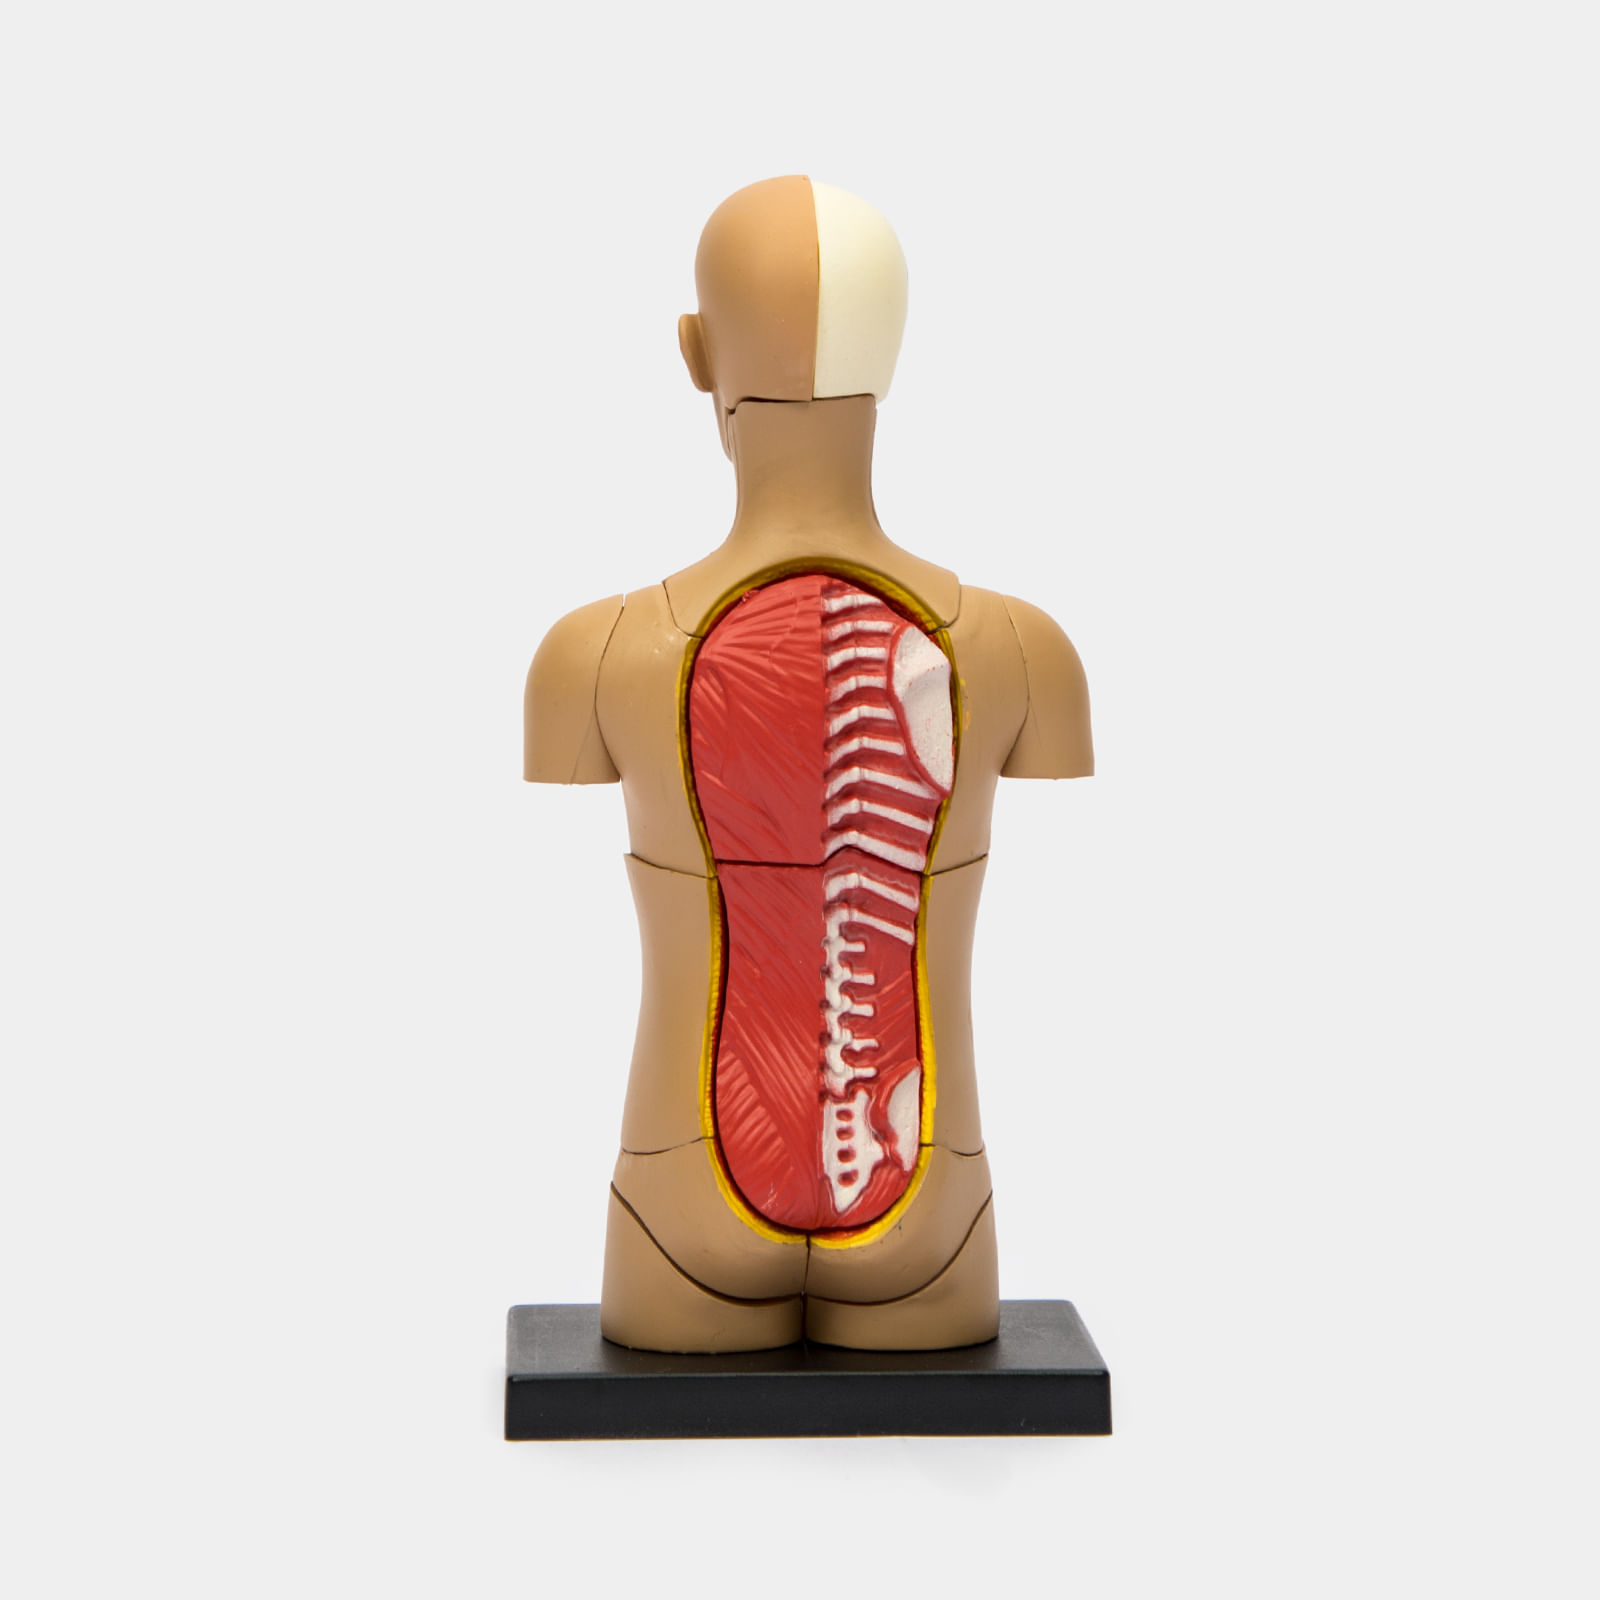 Cuerpo humano, 17 piezas modelo humano desmontable, torso humano